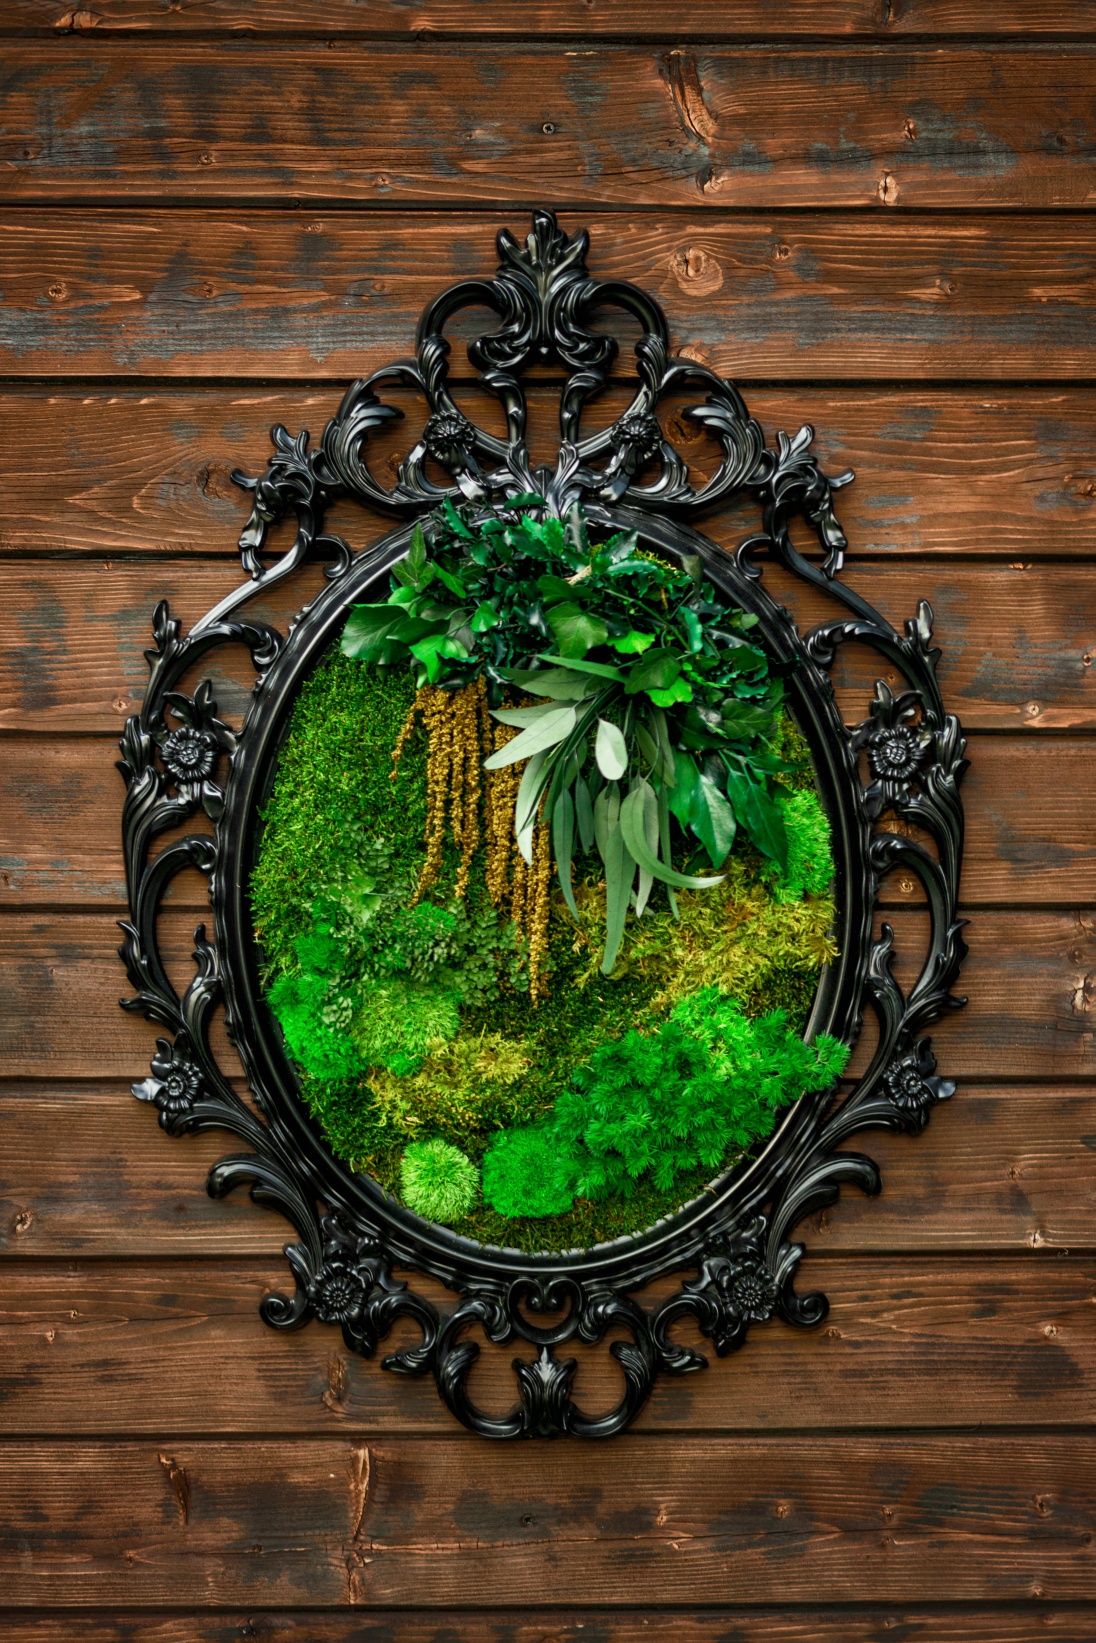 Obraz w gotyckiej ramie z mech i roślinami